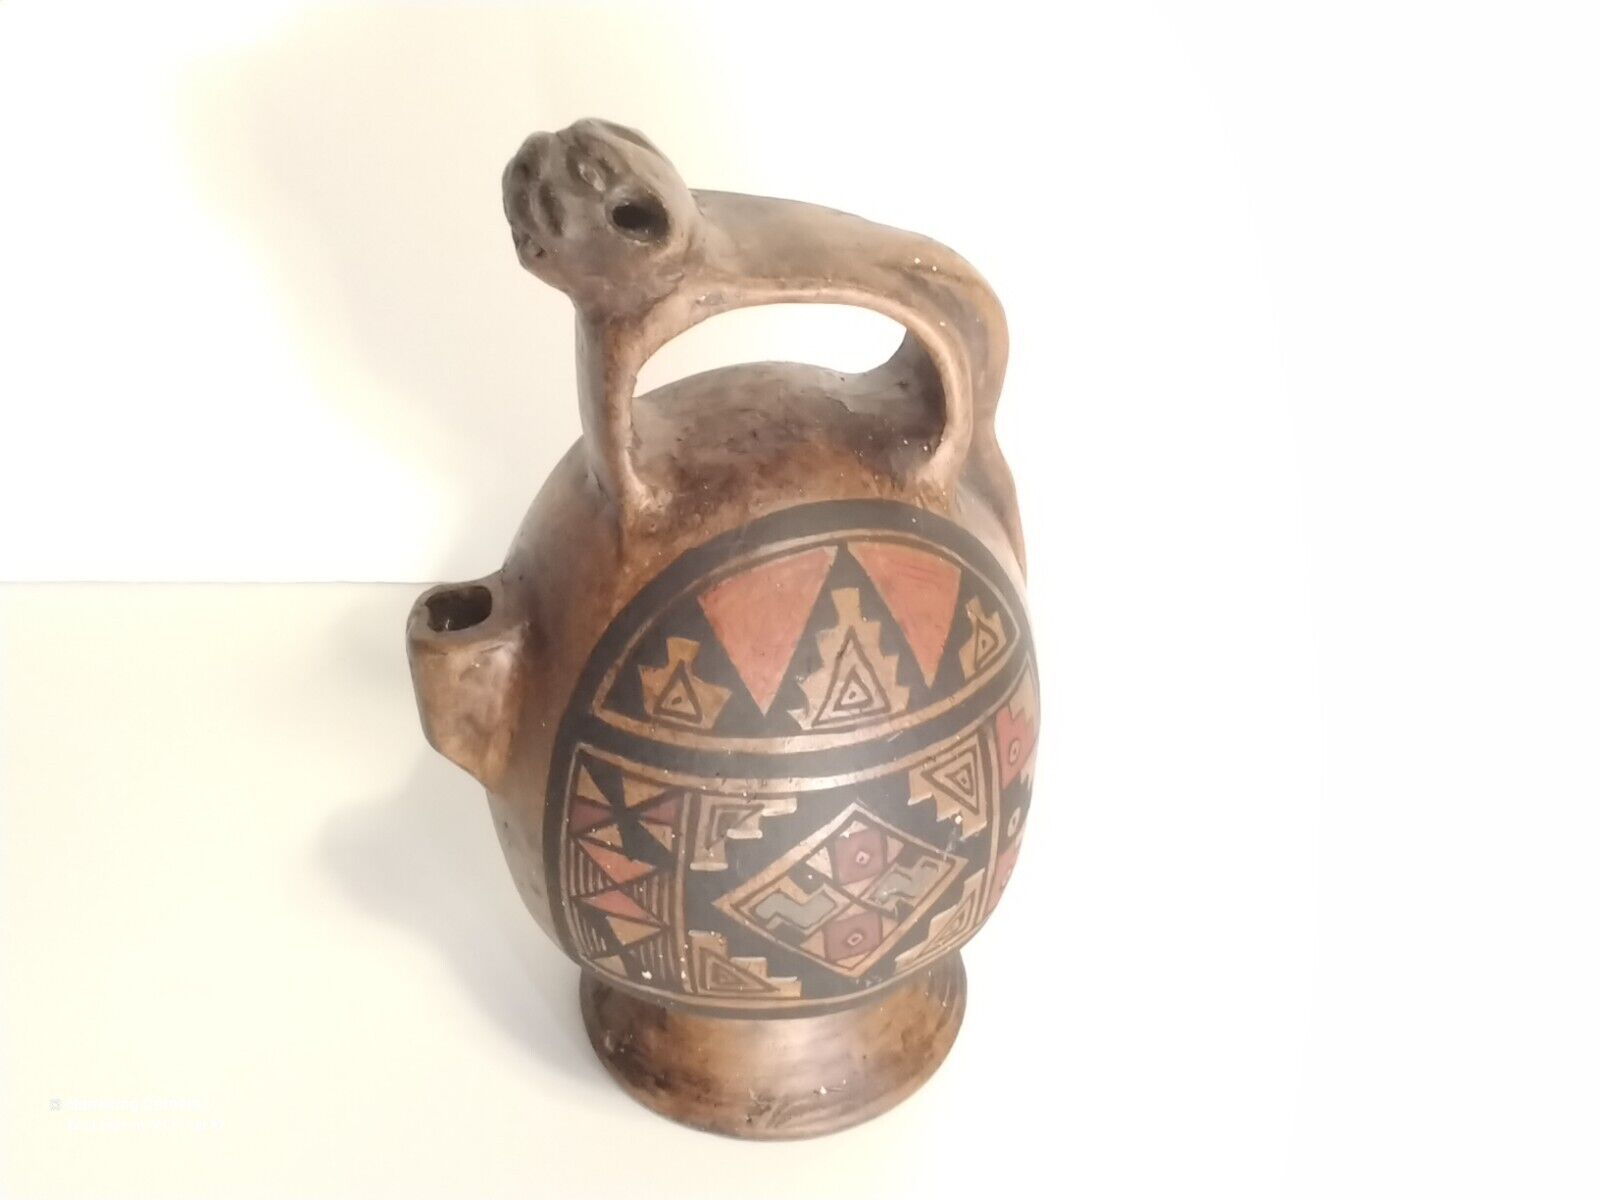  Unique Peru Jaguar Pottery